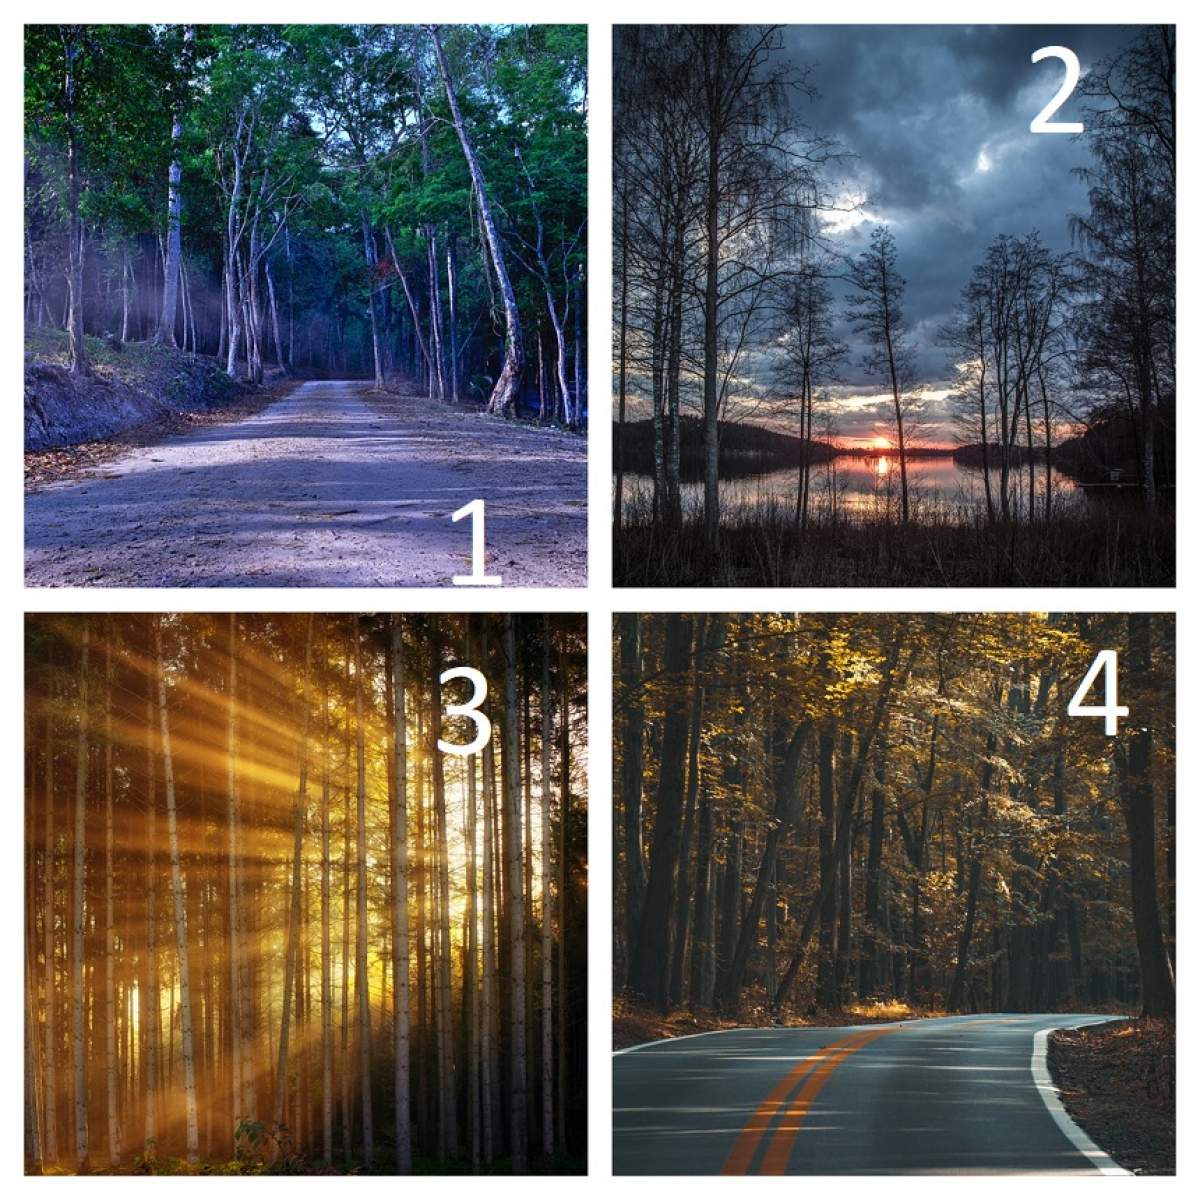 FOTO / TEST: Alege o imagine și vezi dacă vei ajunge în Rai sau în Iad. Ai curaj?